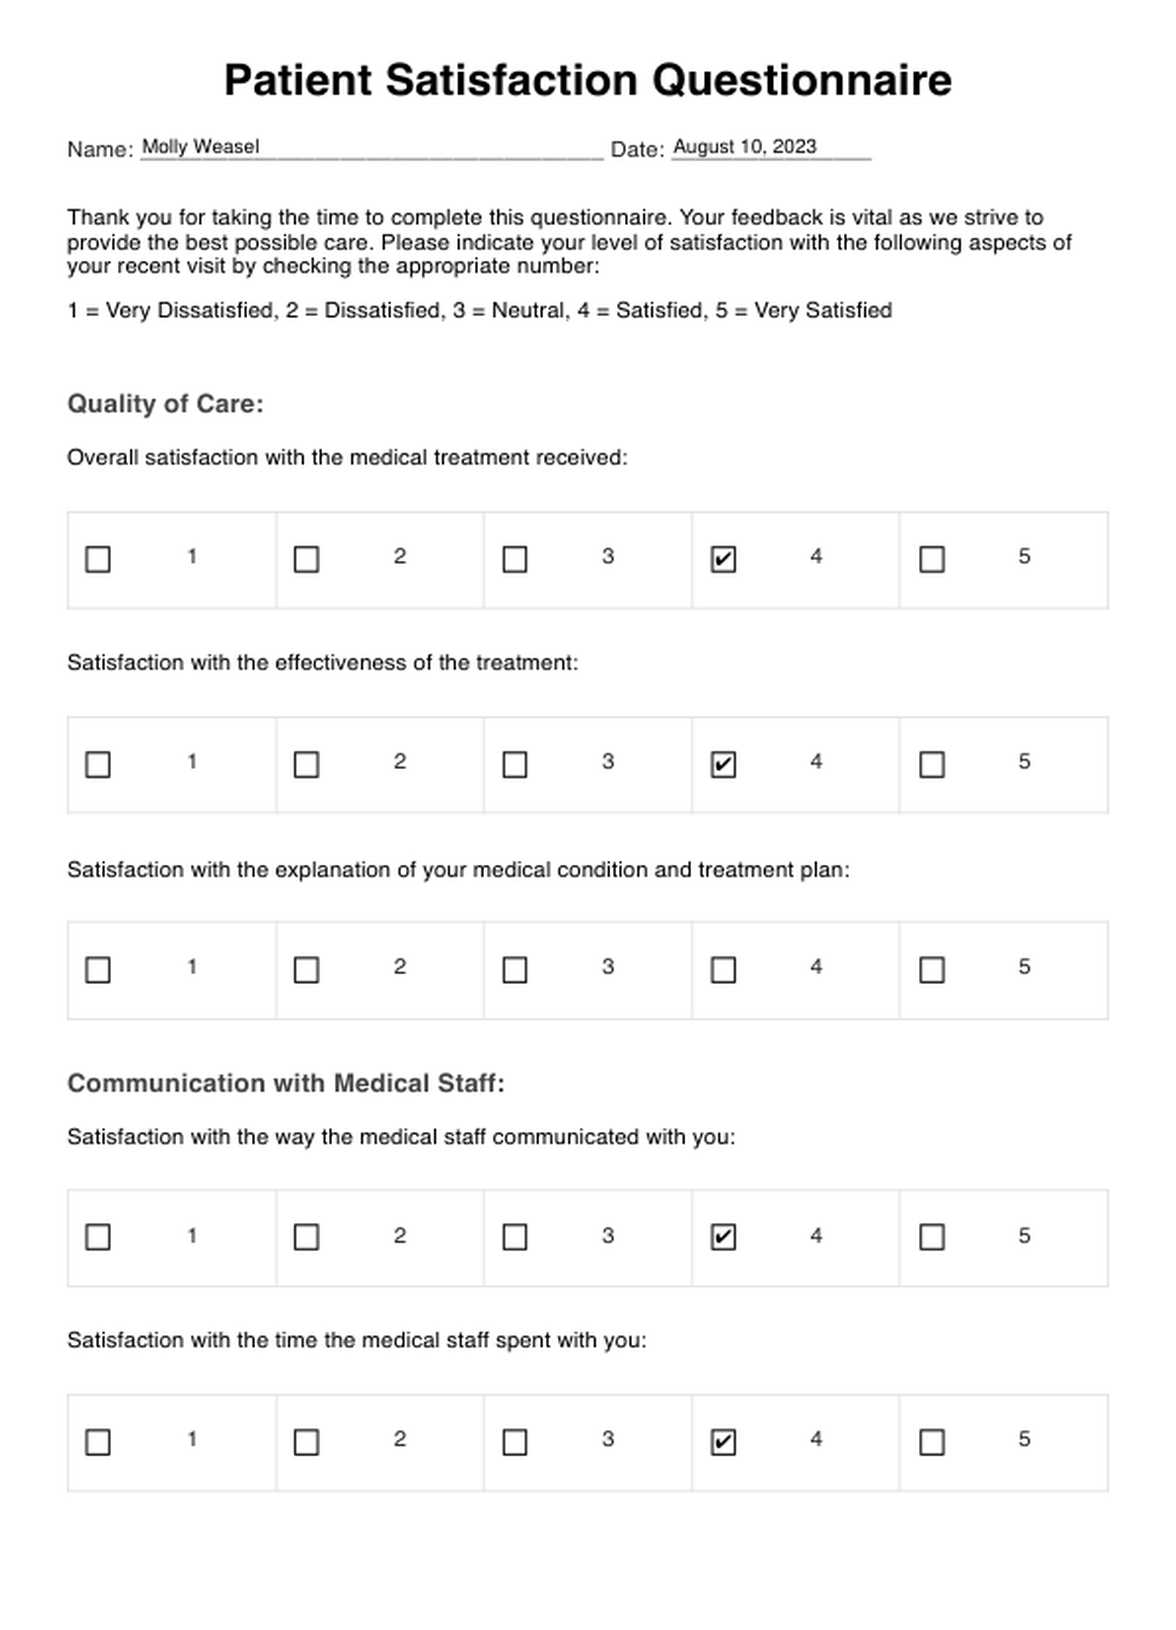 Patient Satisfaction Questionnaires PDF Example